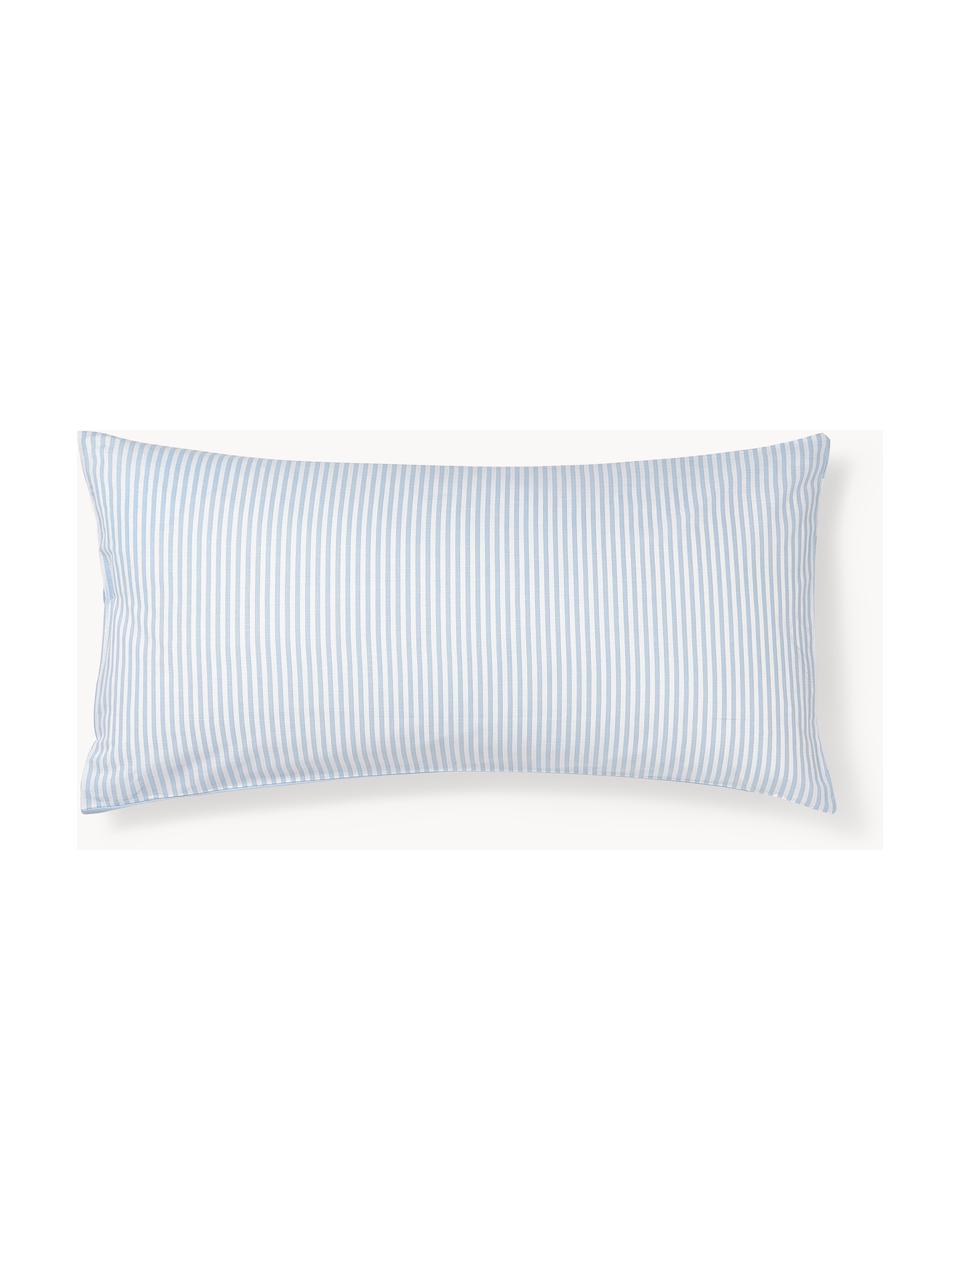 Dwustronna poszewka na poduszkę z bawełny Lorena, Jasny niebieski, biały, S 40 x D 80 cm